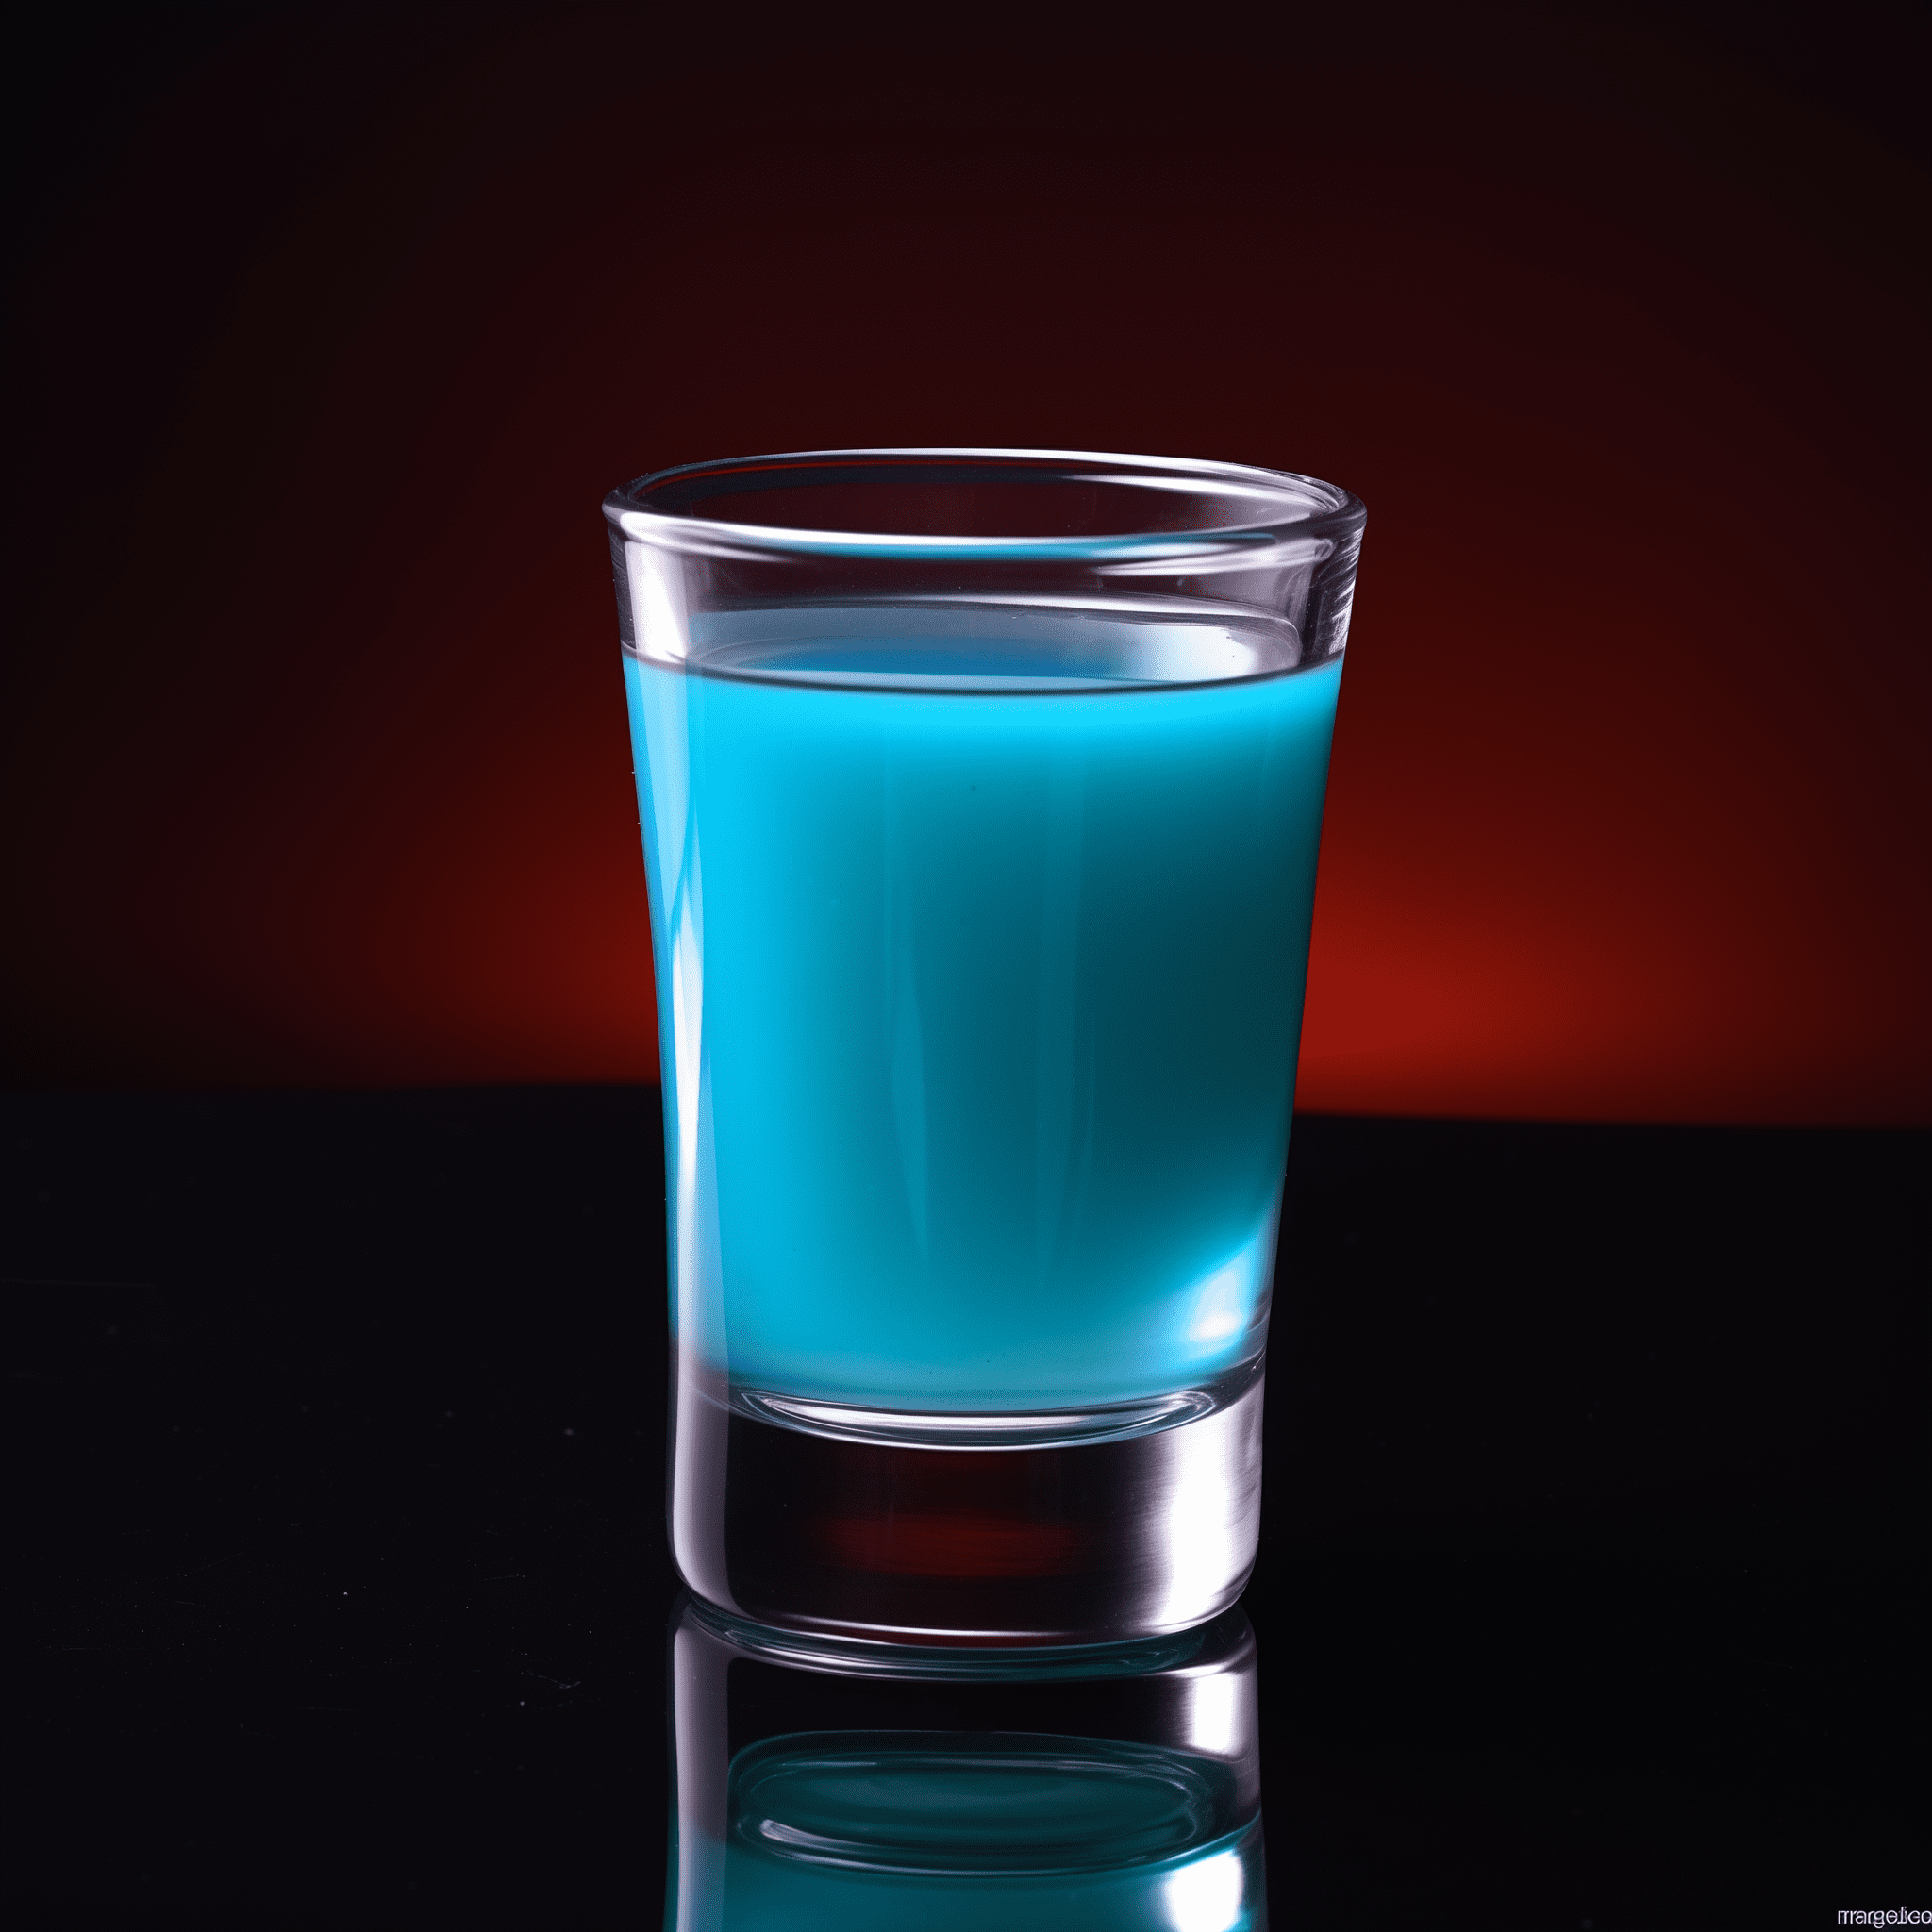 Blue Moon Shot Receta - El Blue Moon Shot ofrece una deliciosa mezcla de sabor a almendra dulce del Amaretto, complementado por las notas ligeramente amargas y cítricas del Blue Curaçao. Es un chupito suave y rico con una textura cremosa que puede ser refrescante e indulgente.